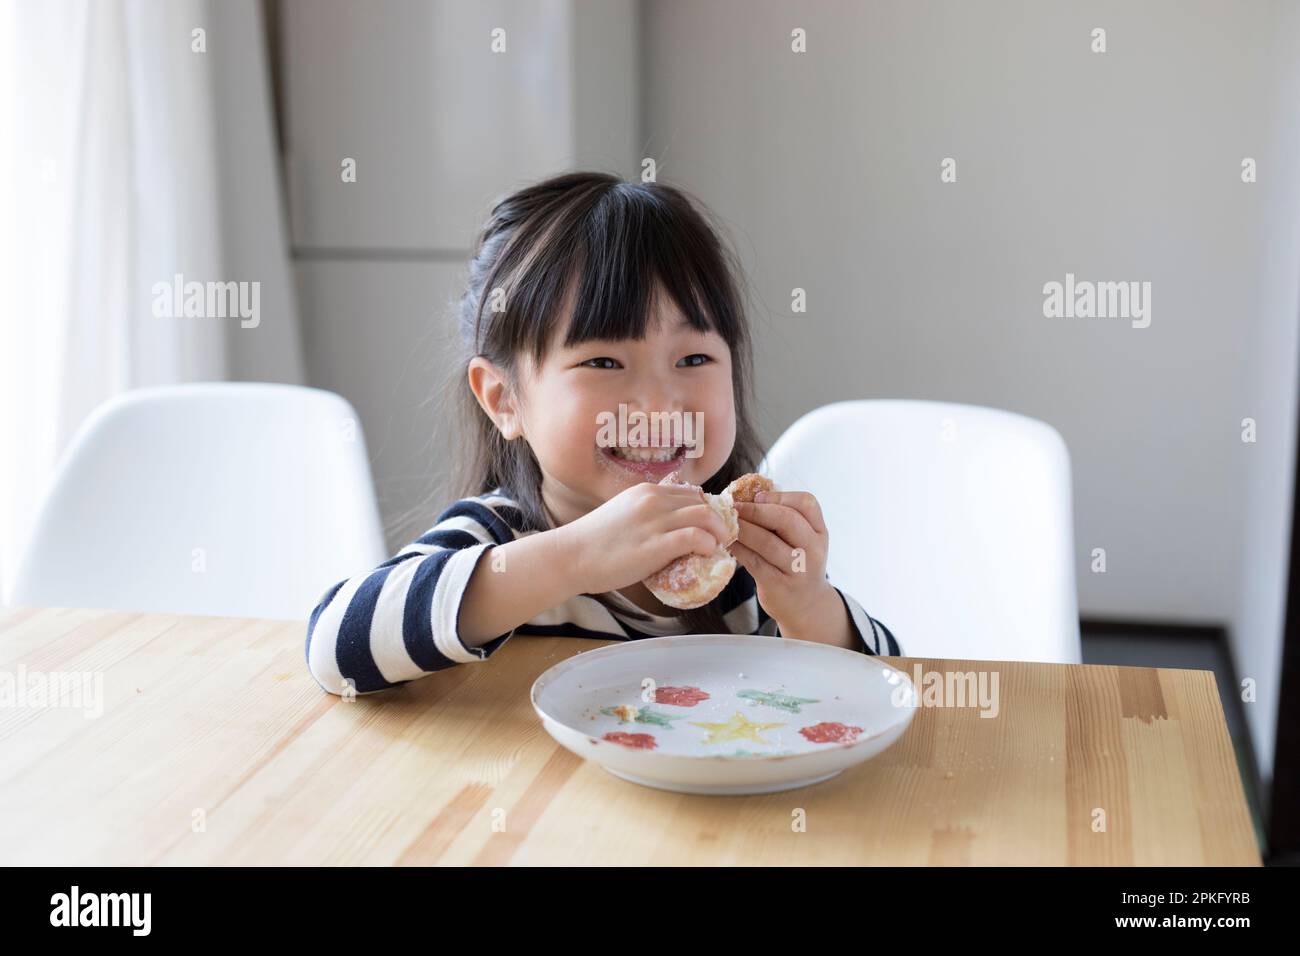 Girl eating a snack doughnut Stock Photo